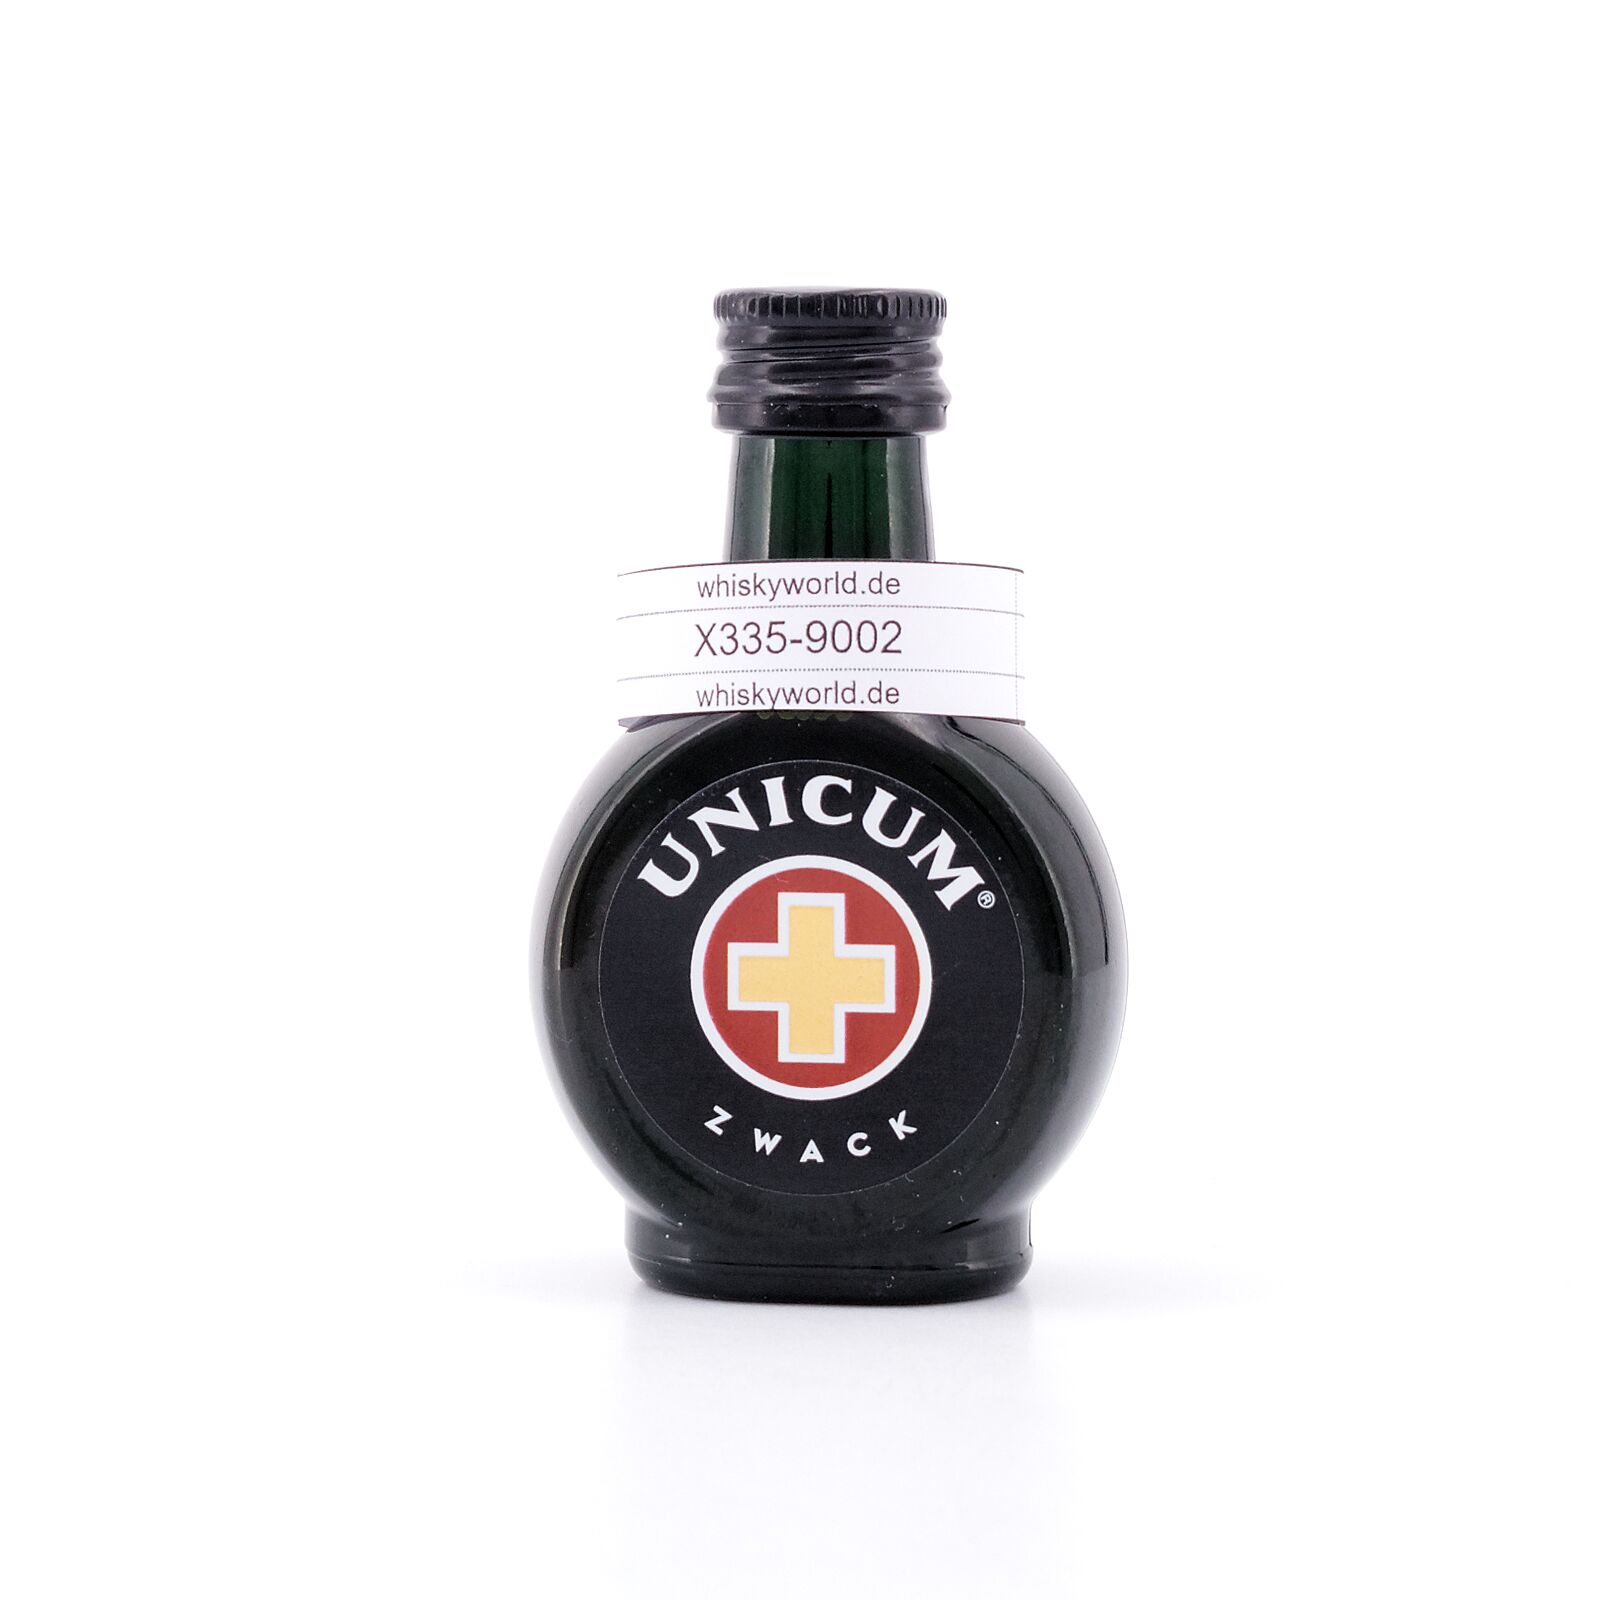 Zwack Unicum Miniatur Kräuterlikör 0,040 Liter/ 40.0% vol